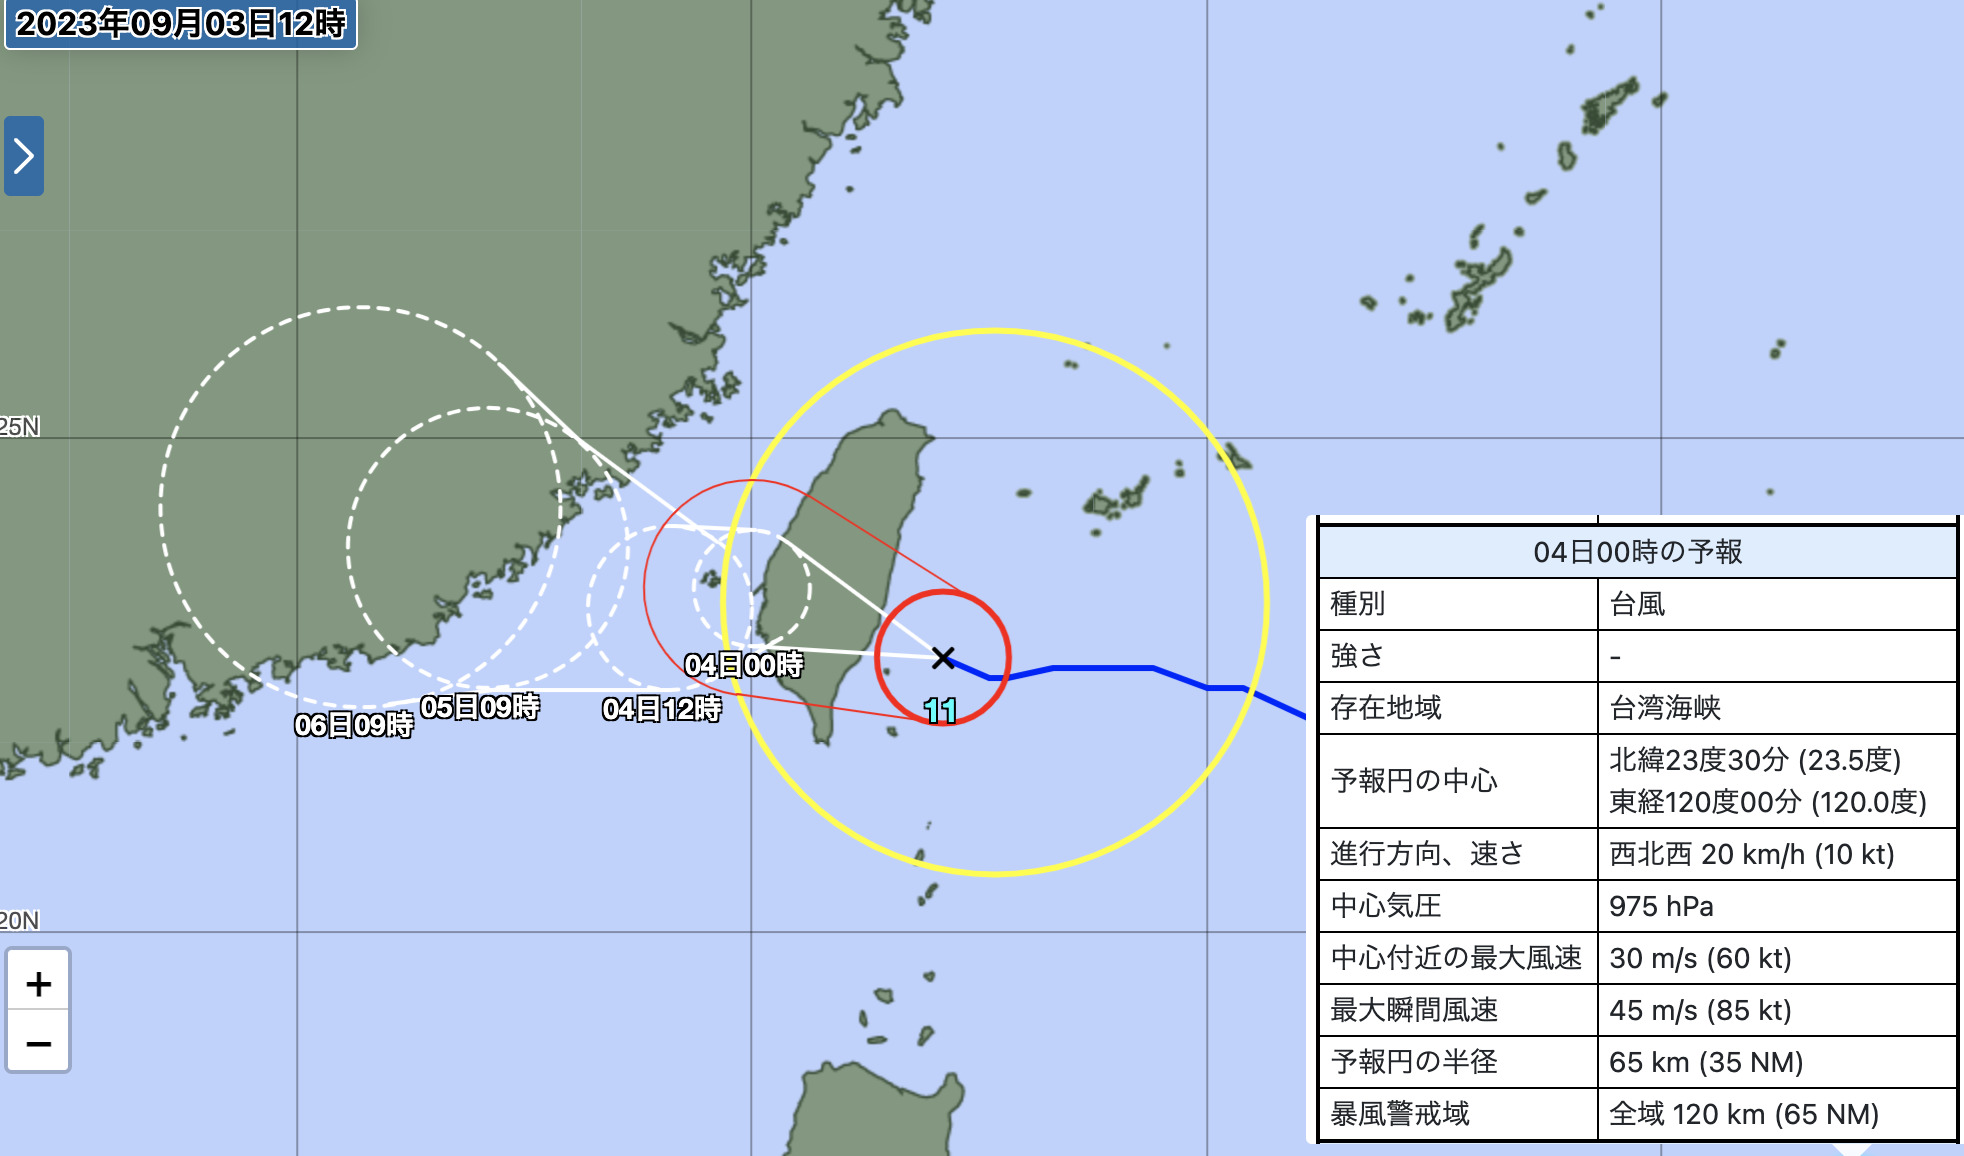 気象庁による台風11号の進路予測